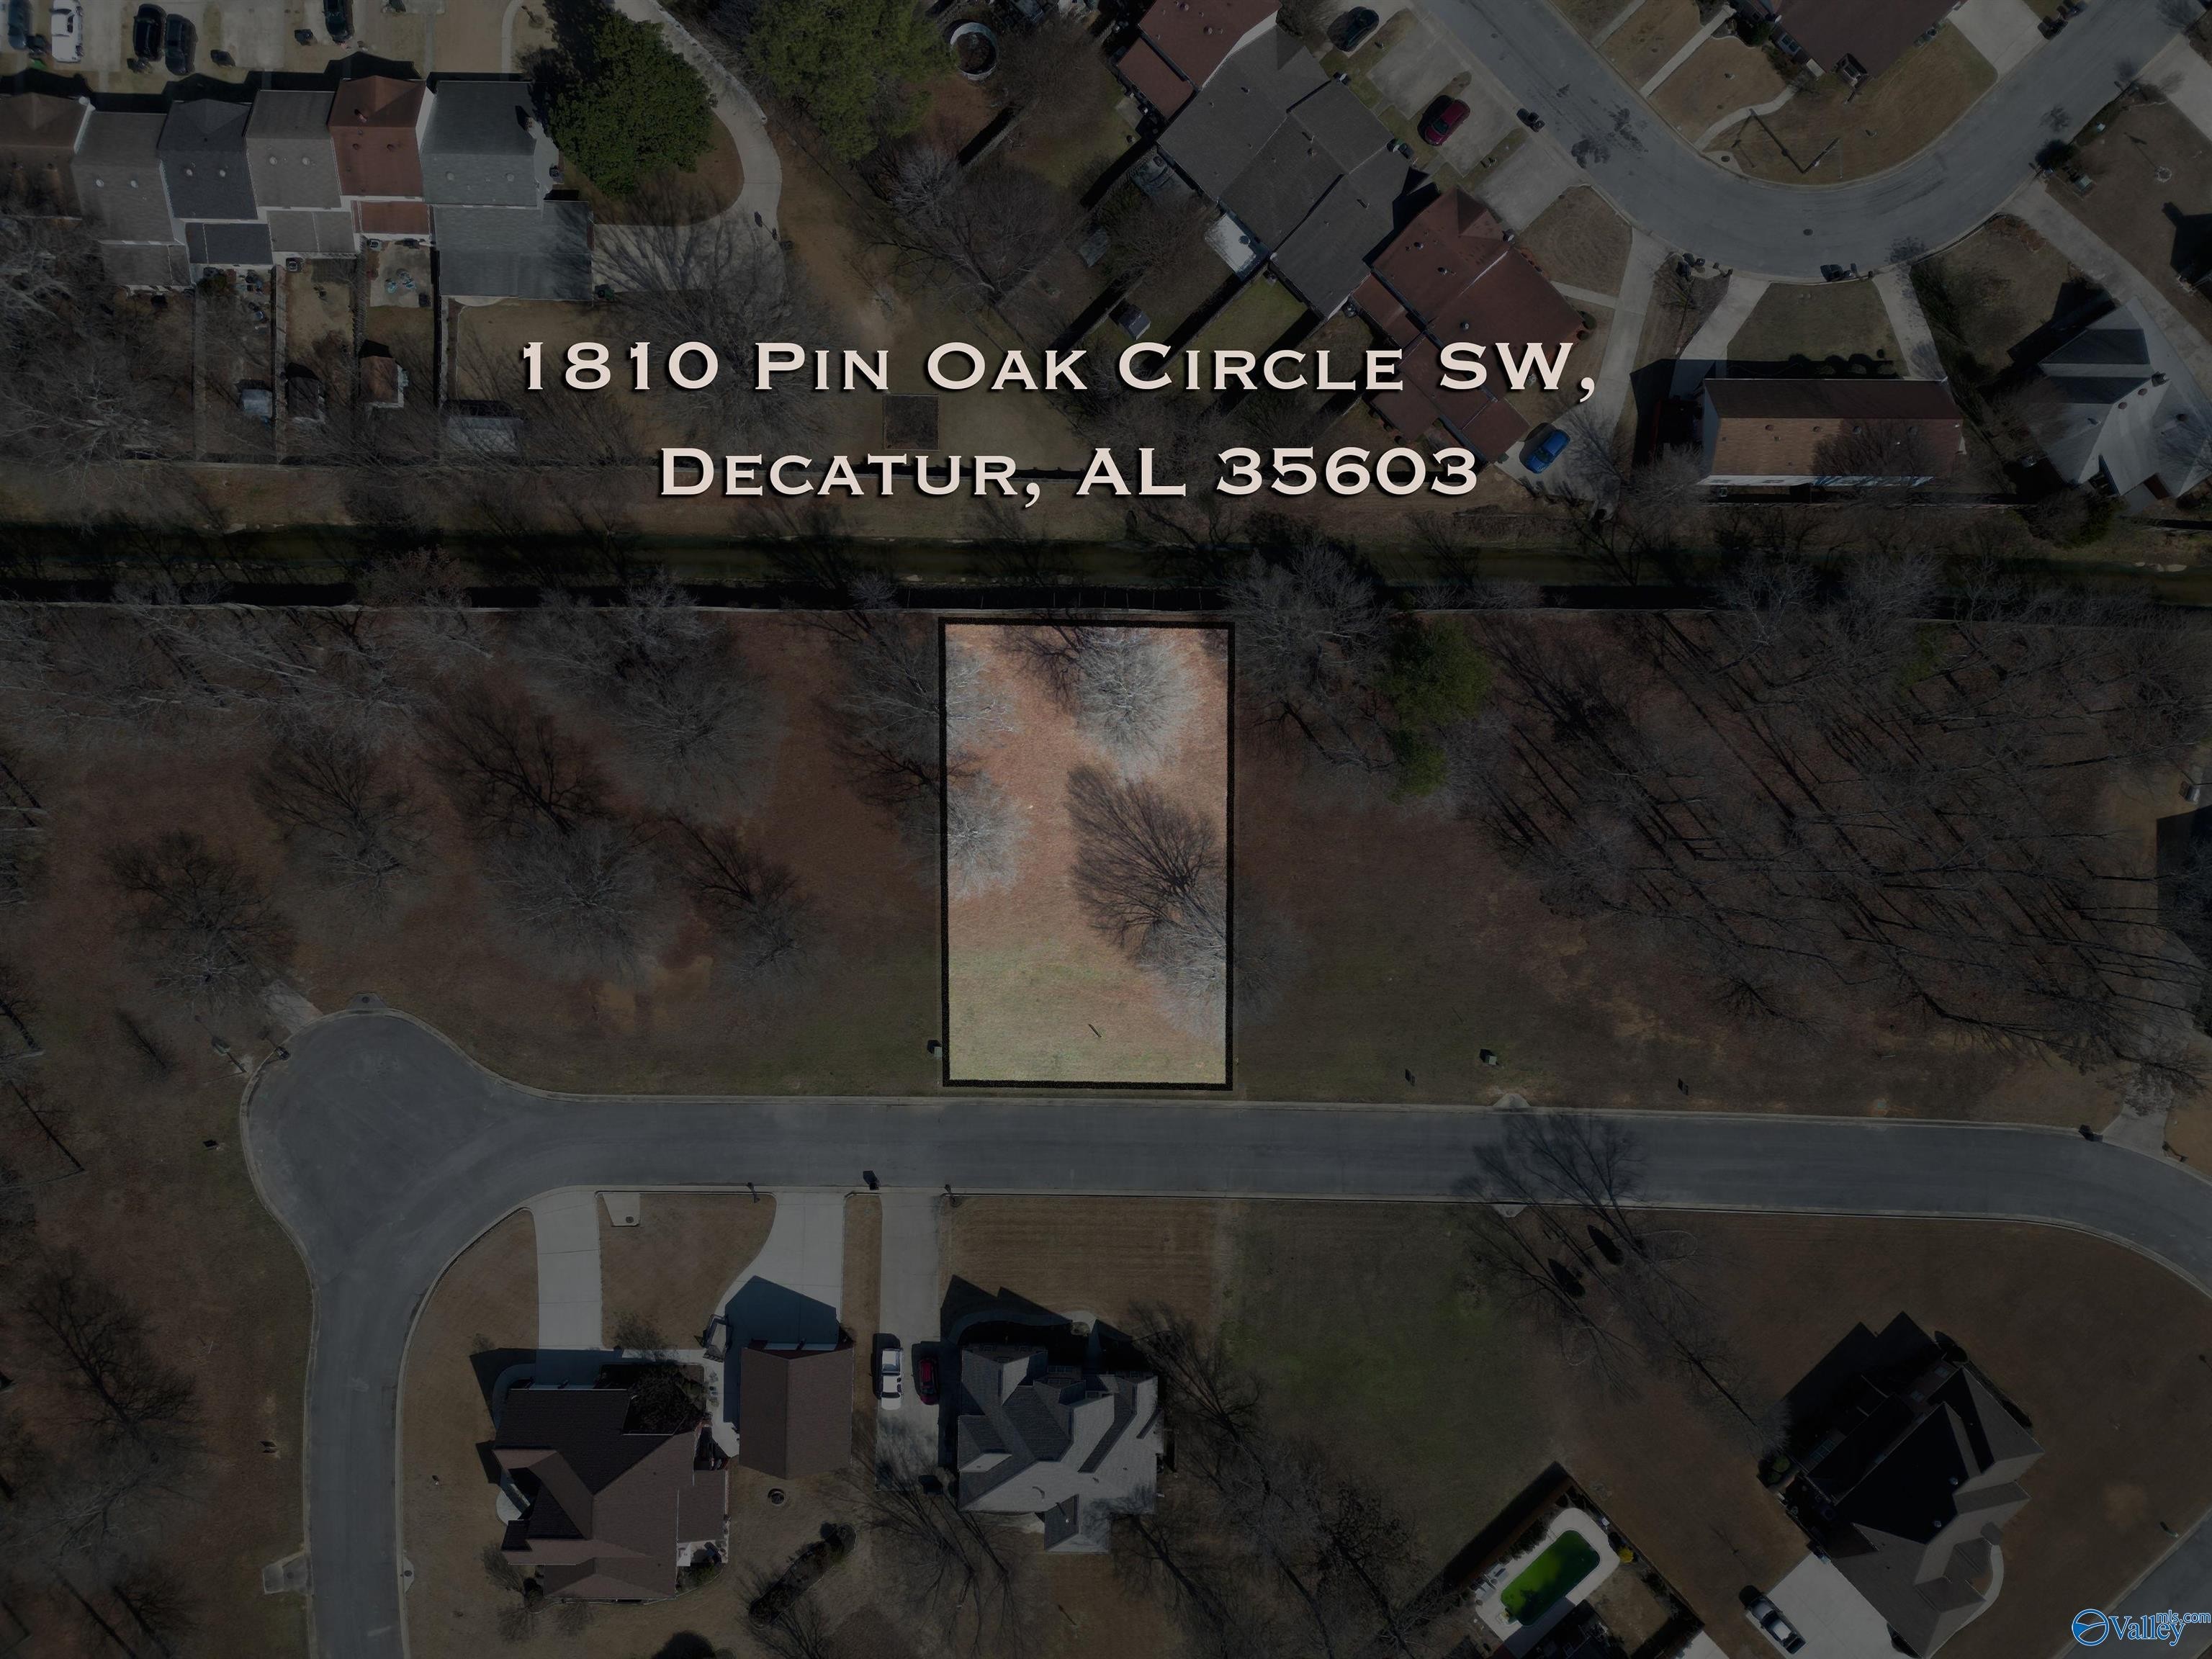 2. 1810 Pin Oak Circle SW